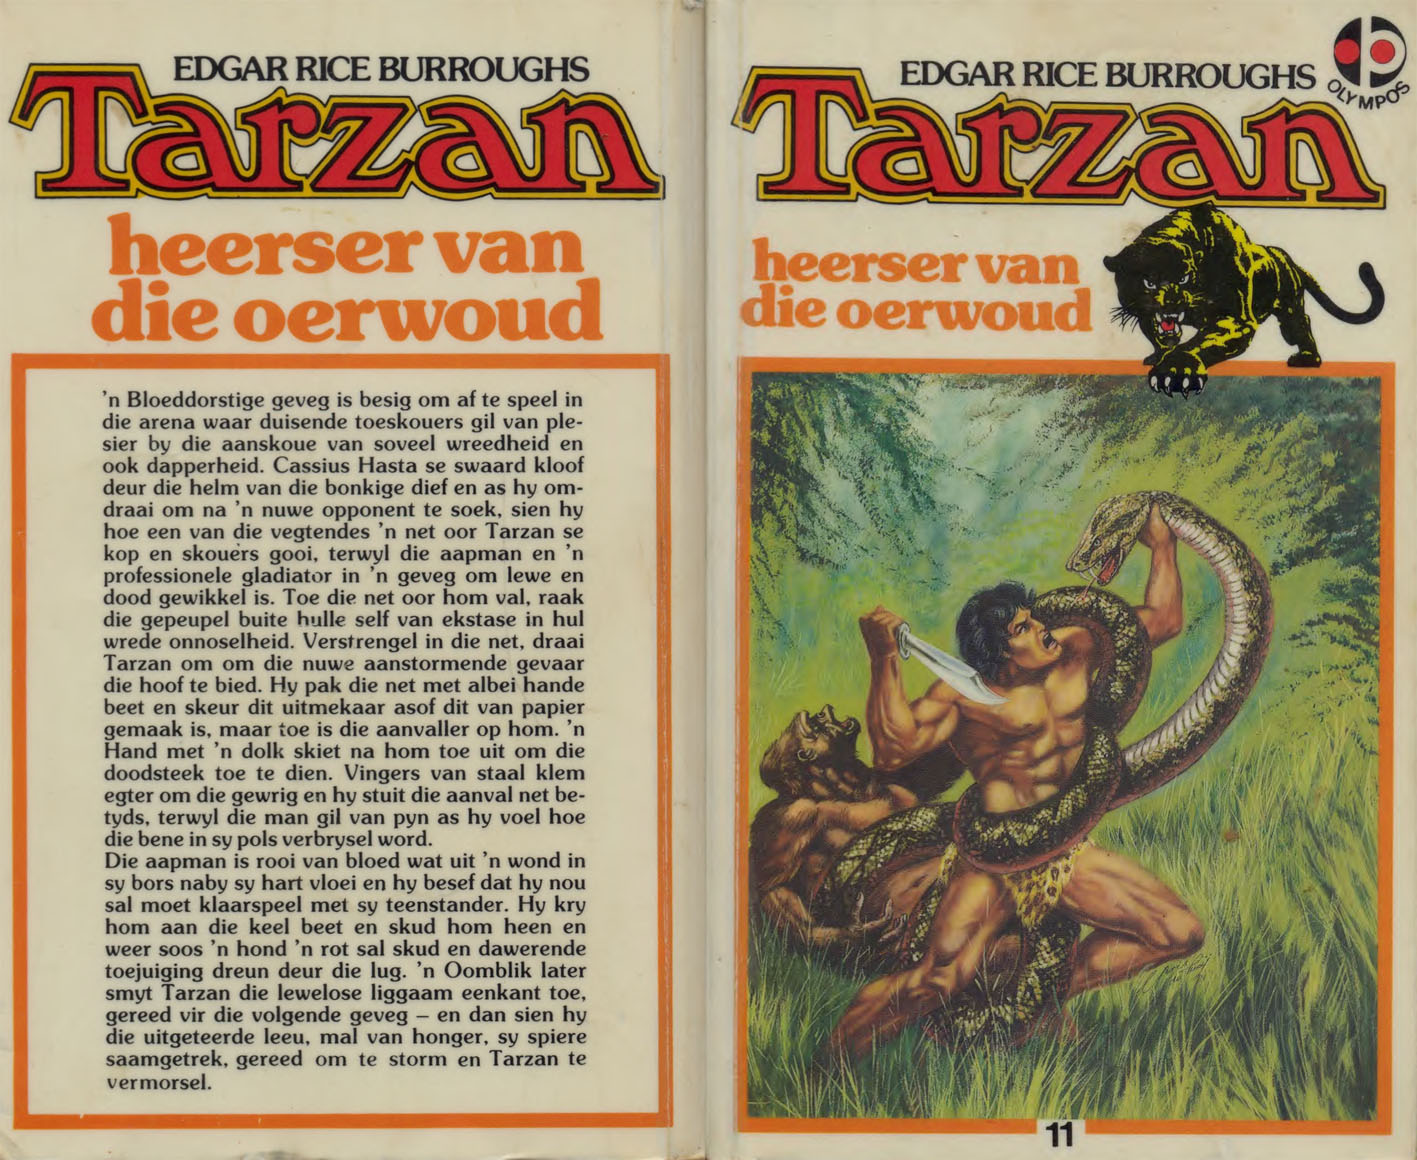 11. Tarzan heerser van die oerwoud - Edgar Rice Burroughs (1985)